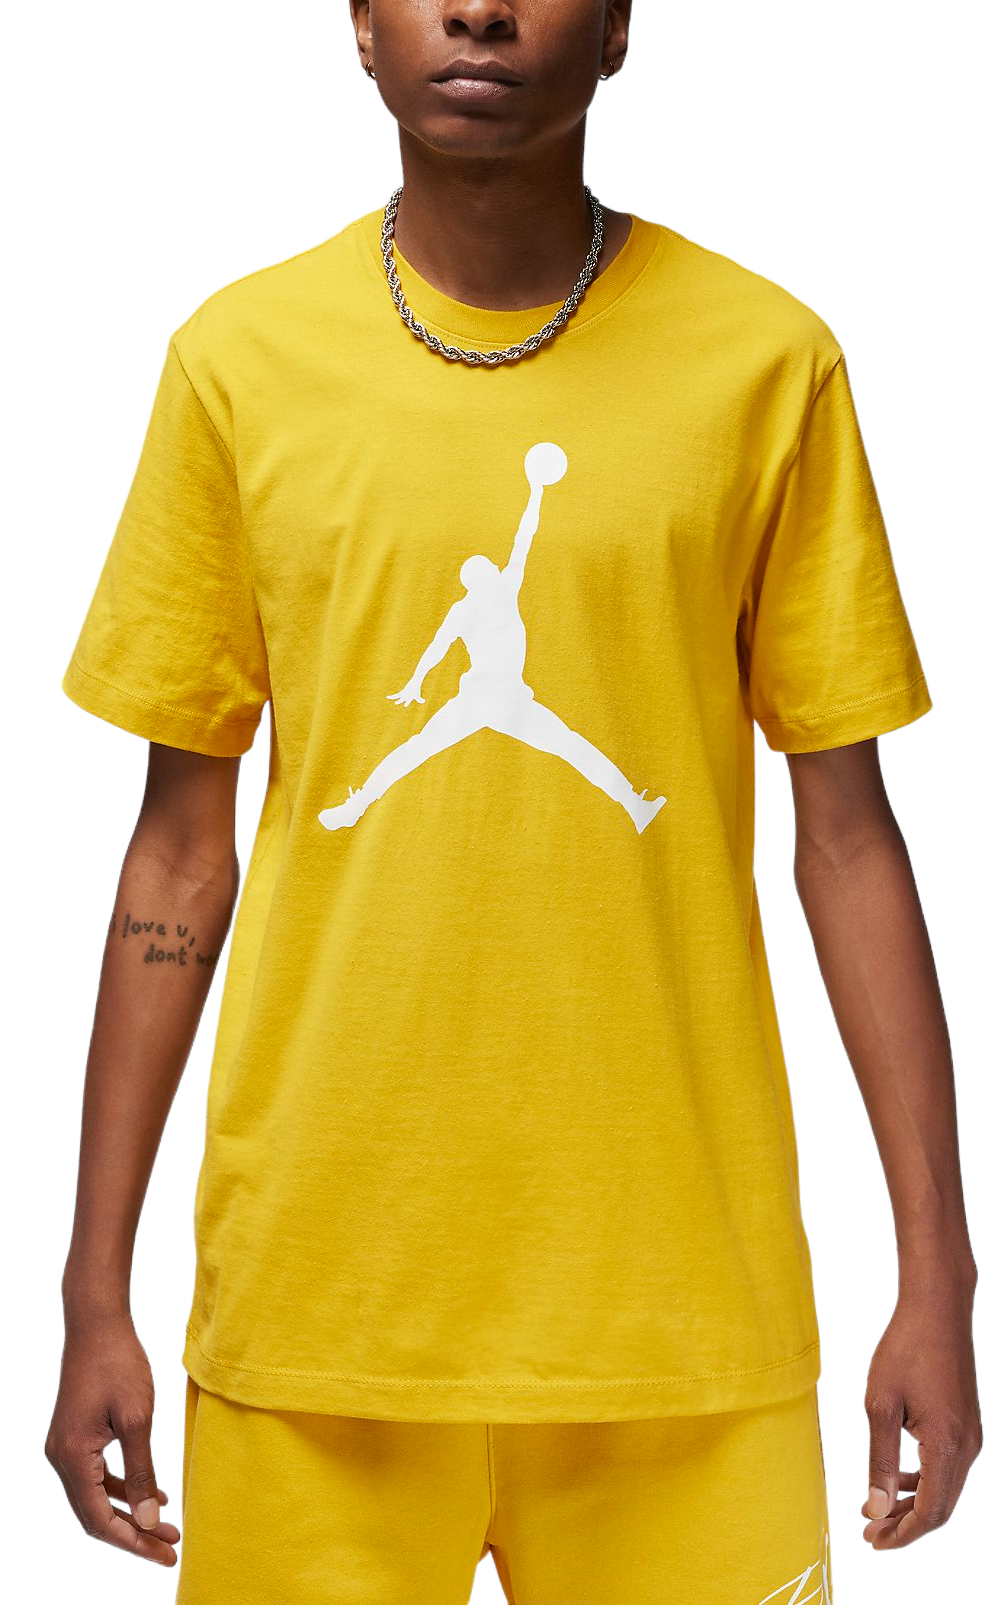 Pánské basketbalové tričko s krátkým rukávem Jordan Jumpman